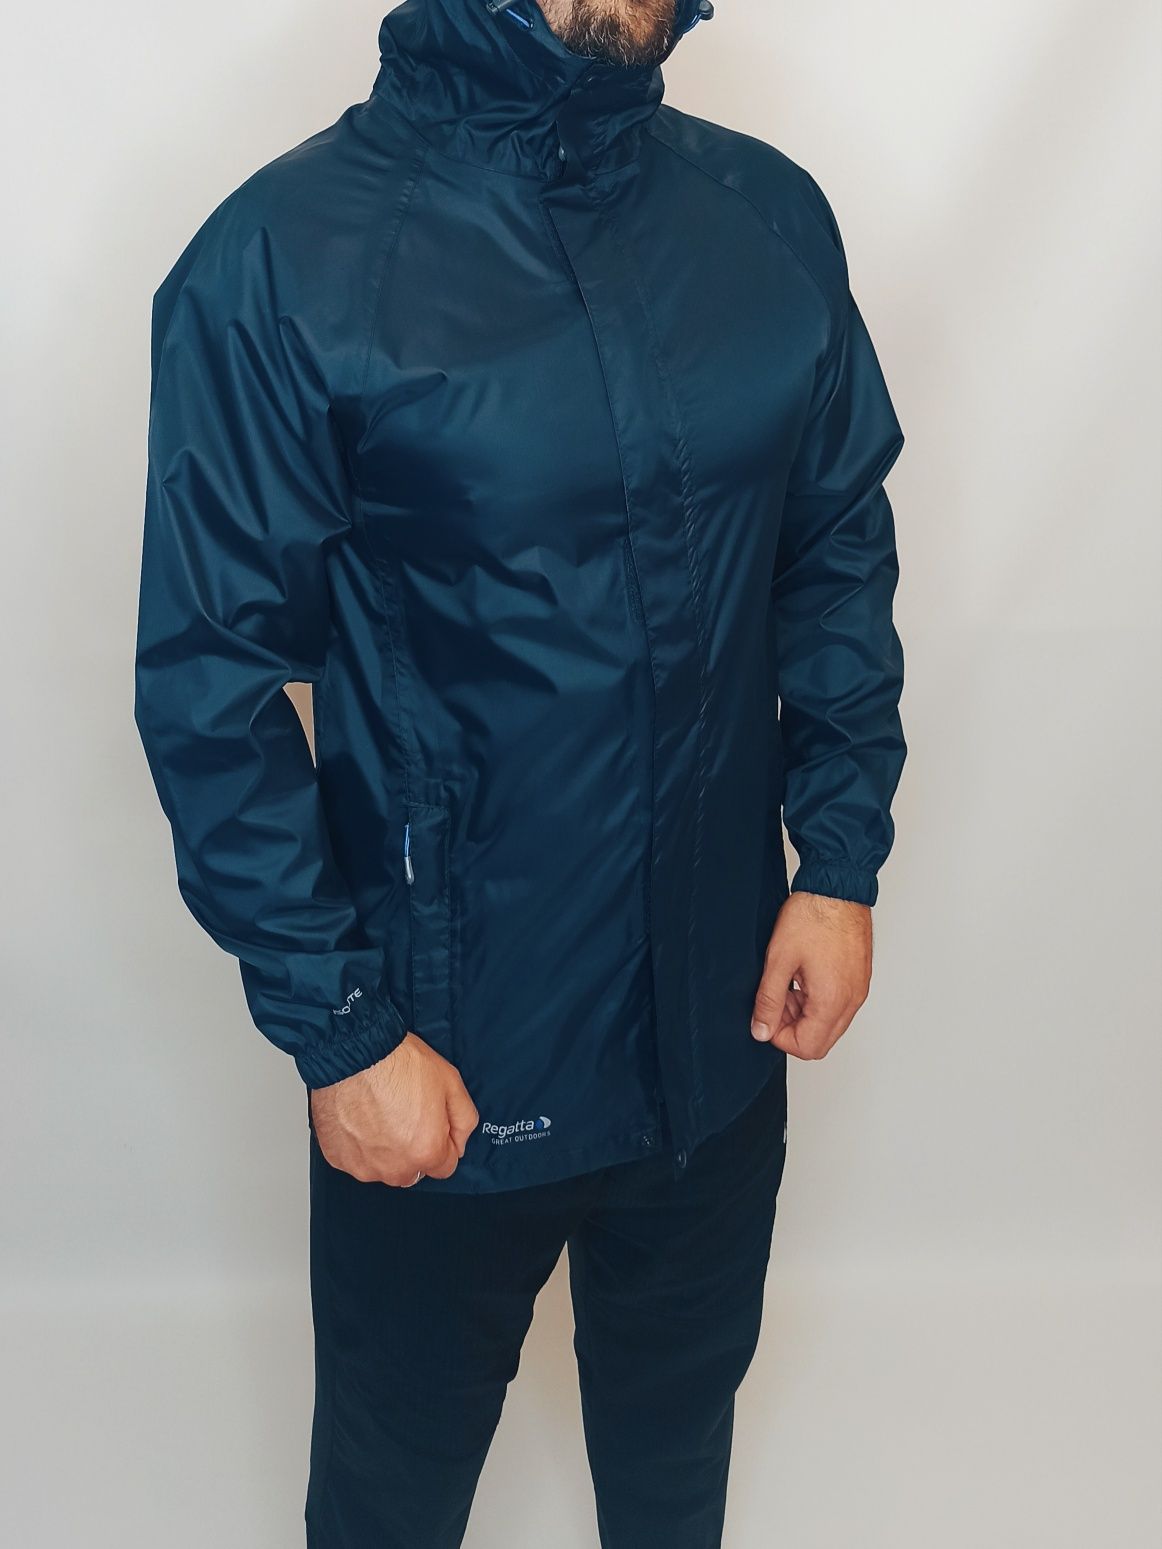 Куртка мужская ветровка дождевик синий с капюшоном Regatta Размер SM